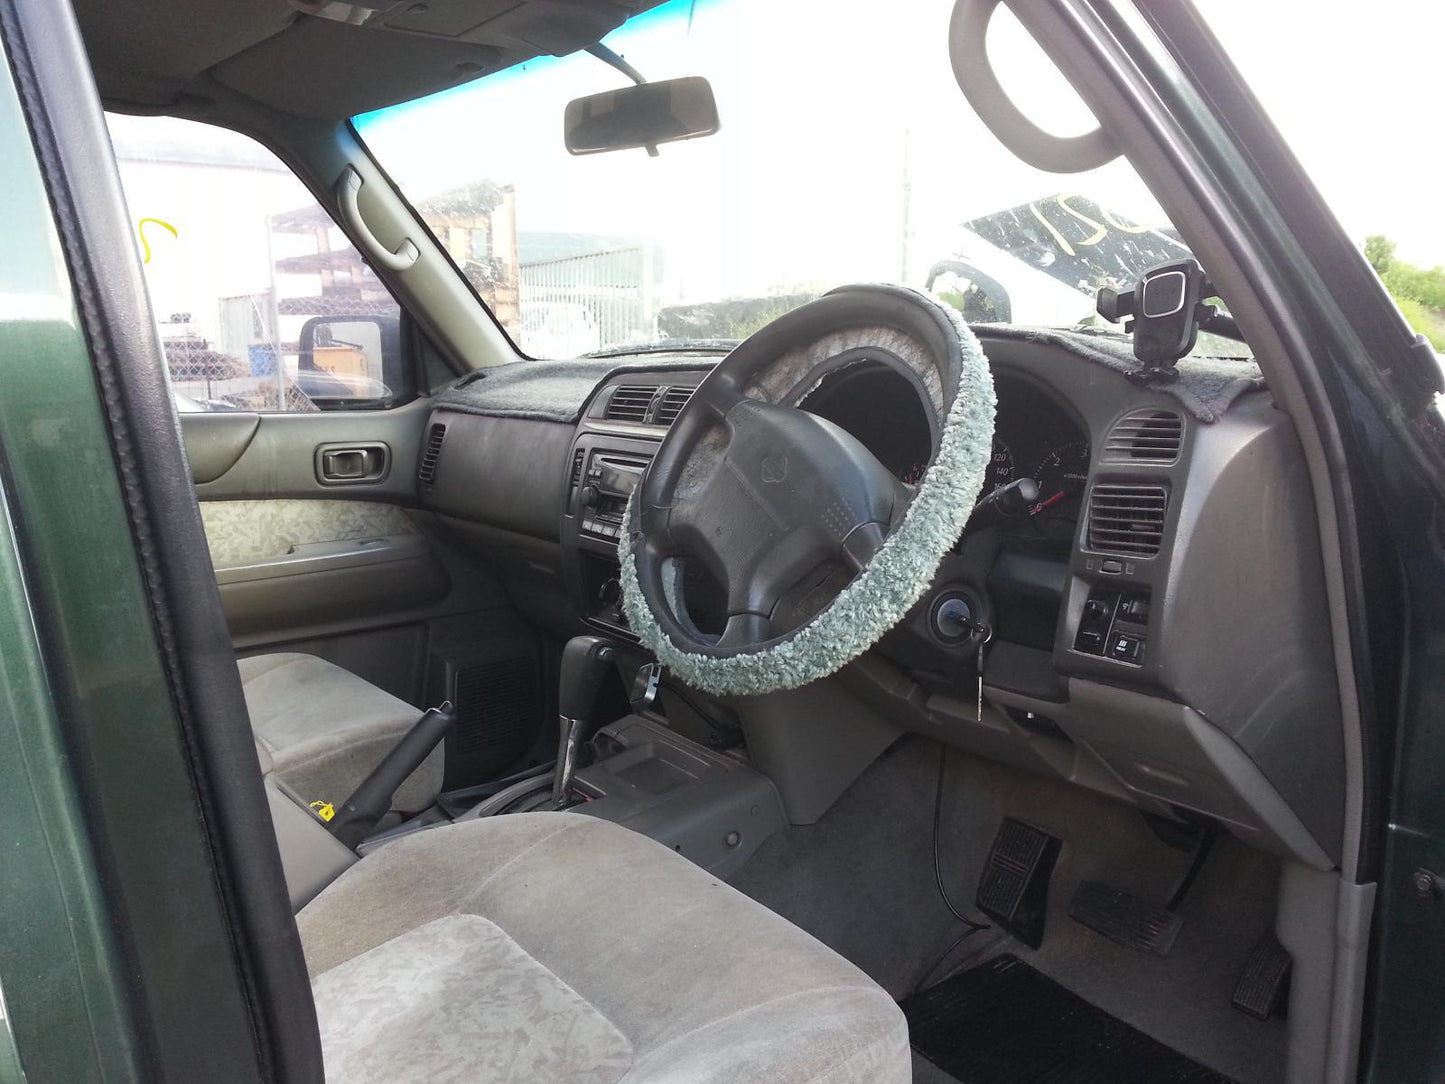 Nissan Patrol Steering Column Shroud